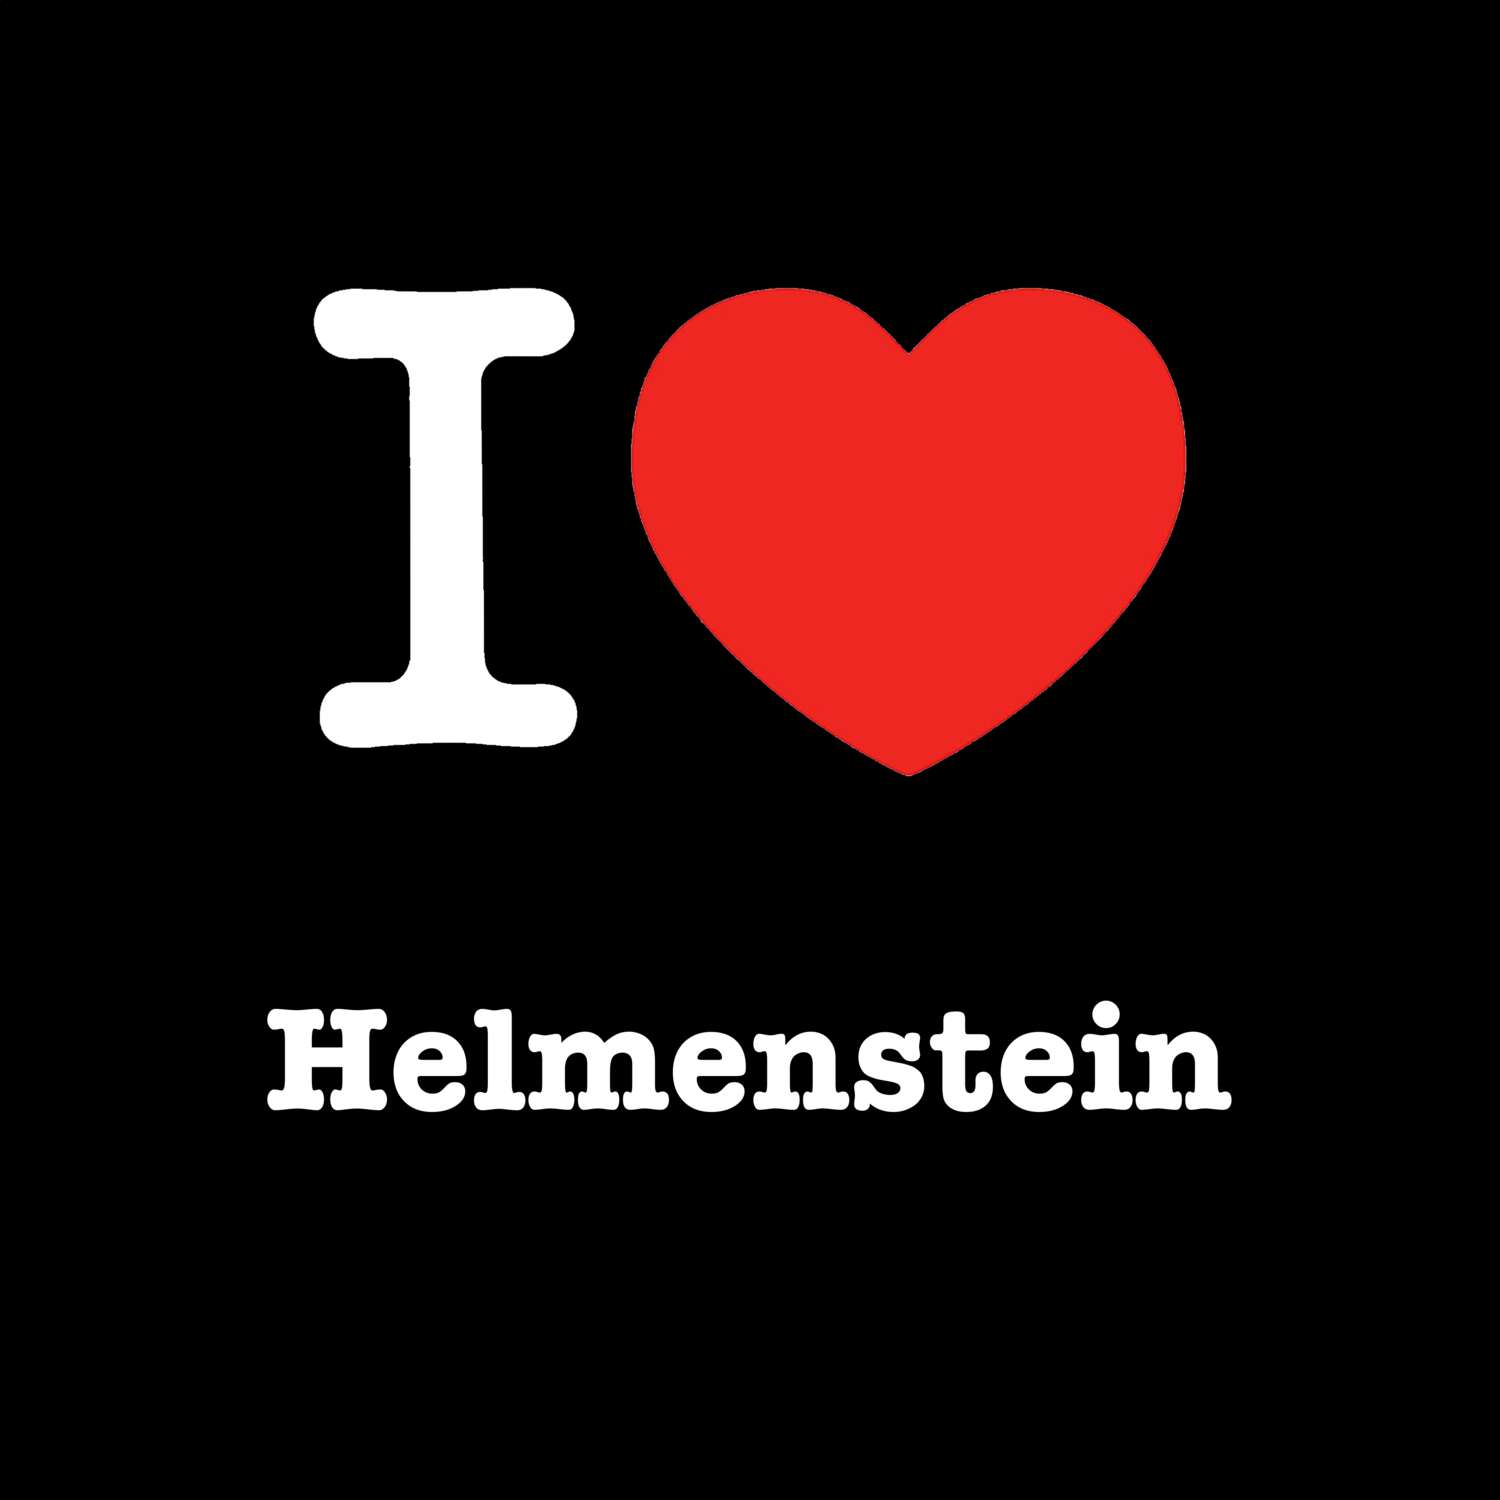 Helmenstein T-Shirt »I love«